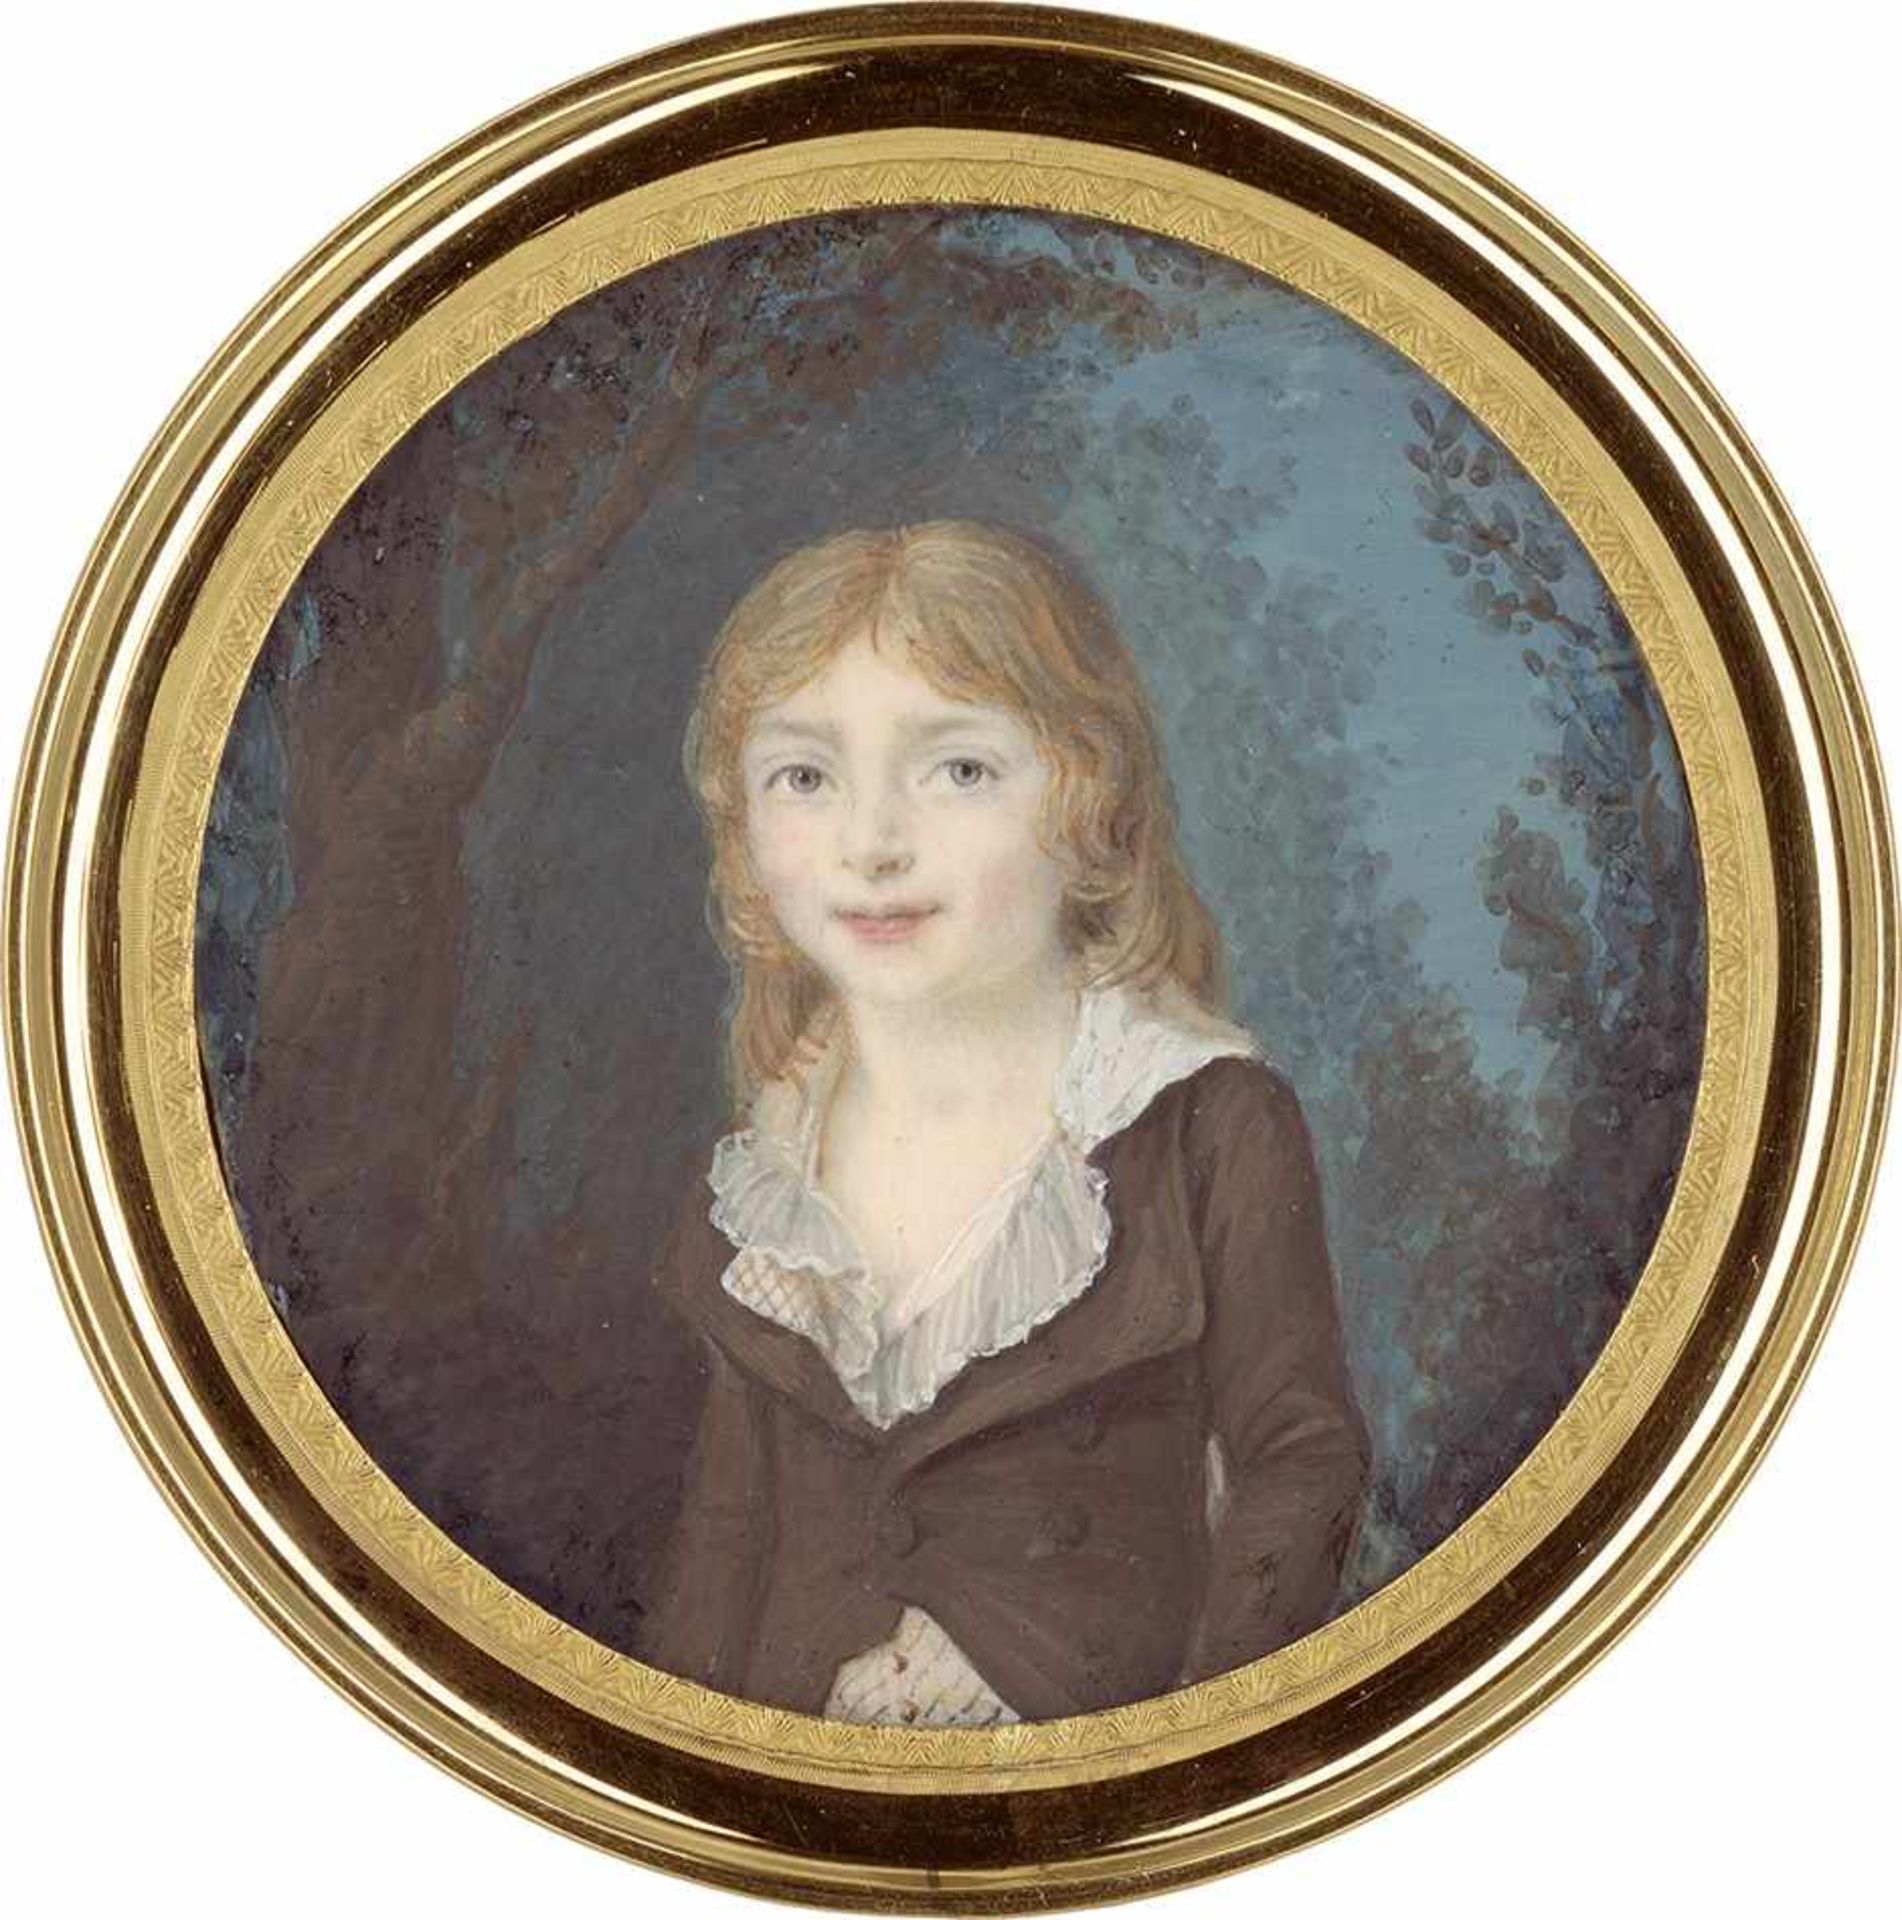 Französisch: um 1790/1795. Bildnis eines kleinen Jungen mit langem blonden Haar, in brauner